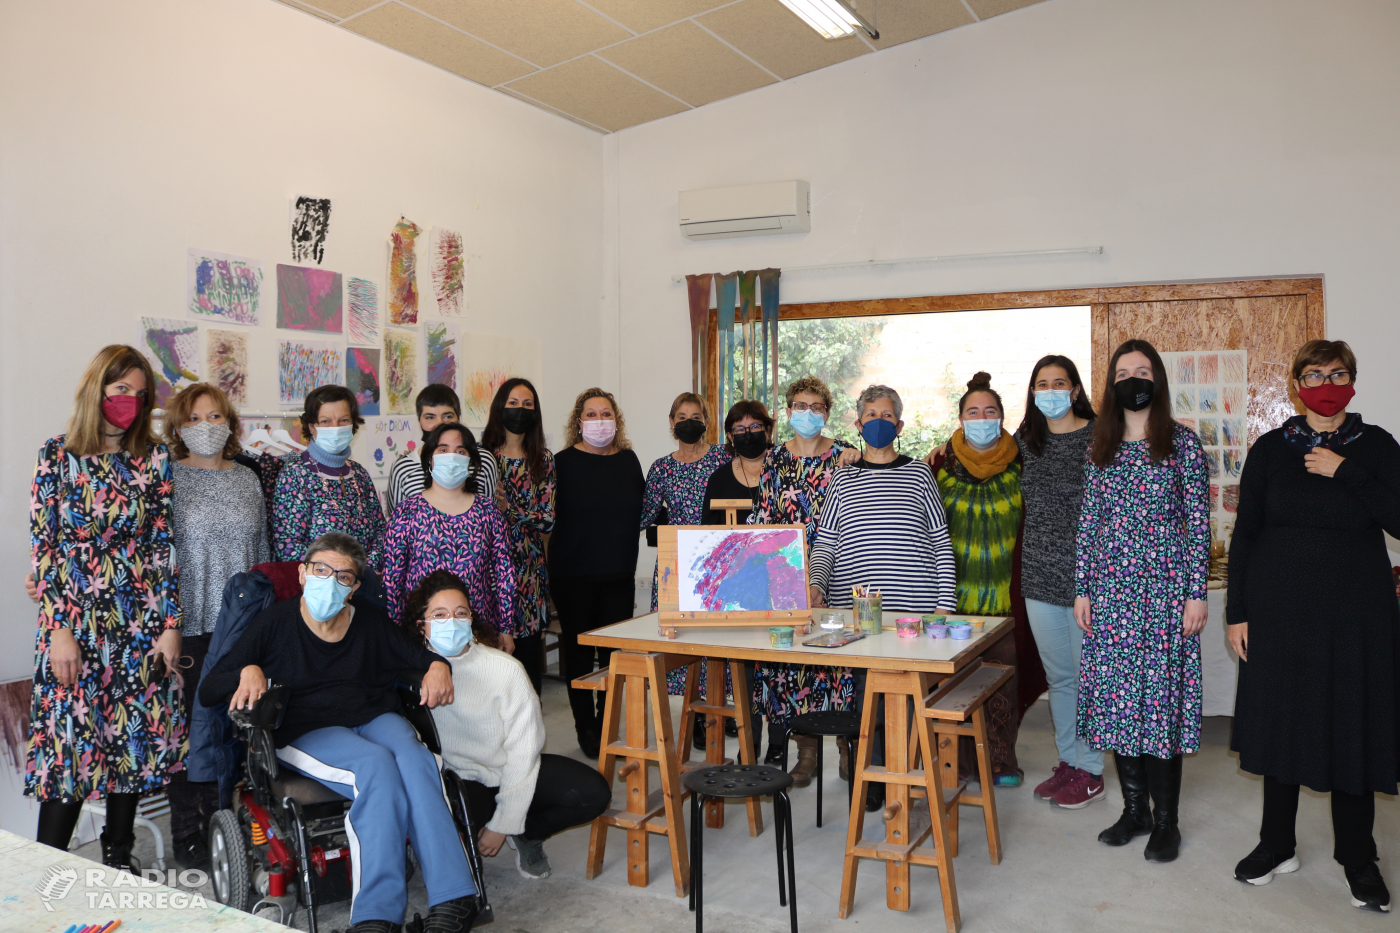 El Centre d'Art Singular de Guissona gestionat pel Grup Alba reuneix a diferents dones artistes per reivindicar la seva visibilització en el món de l'art coincidint amb la setmana del 8 de març